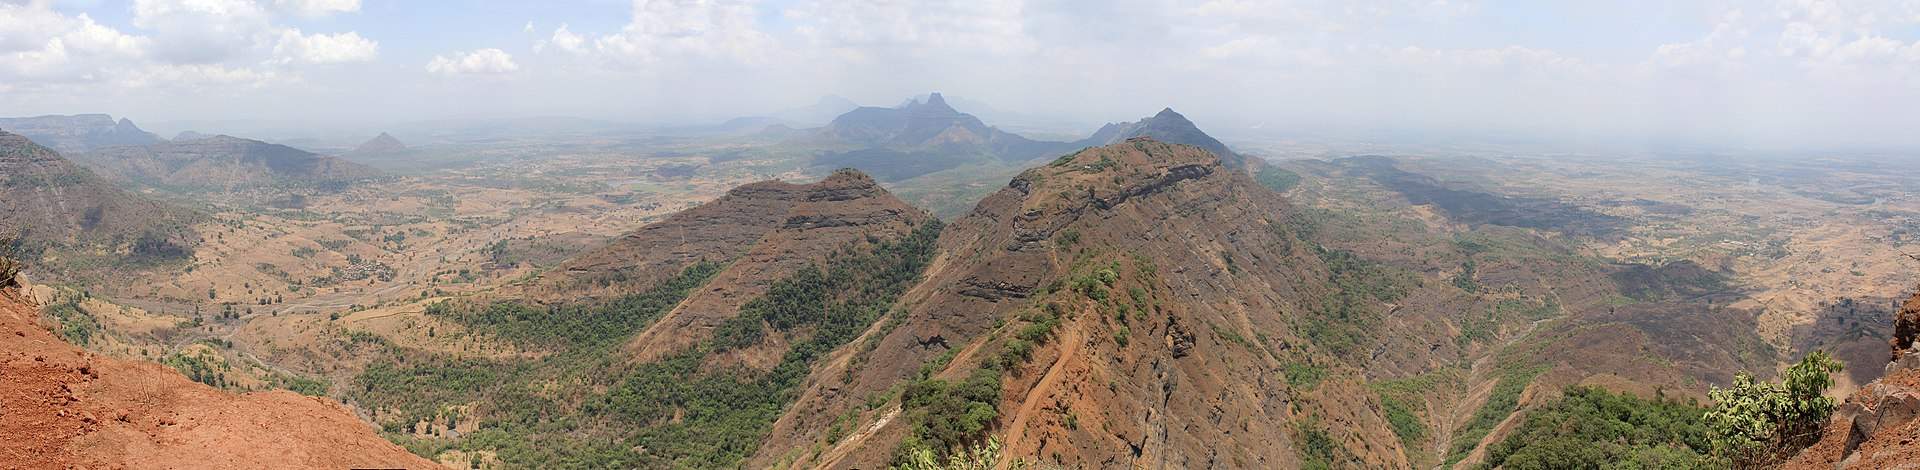 Abb. 3: Die Western Ghats in Indien in der Trockenzeit; Quelle: Wikipedia